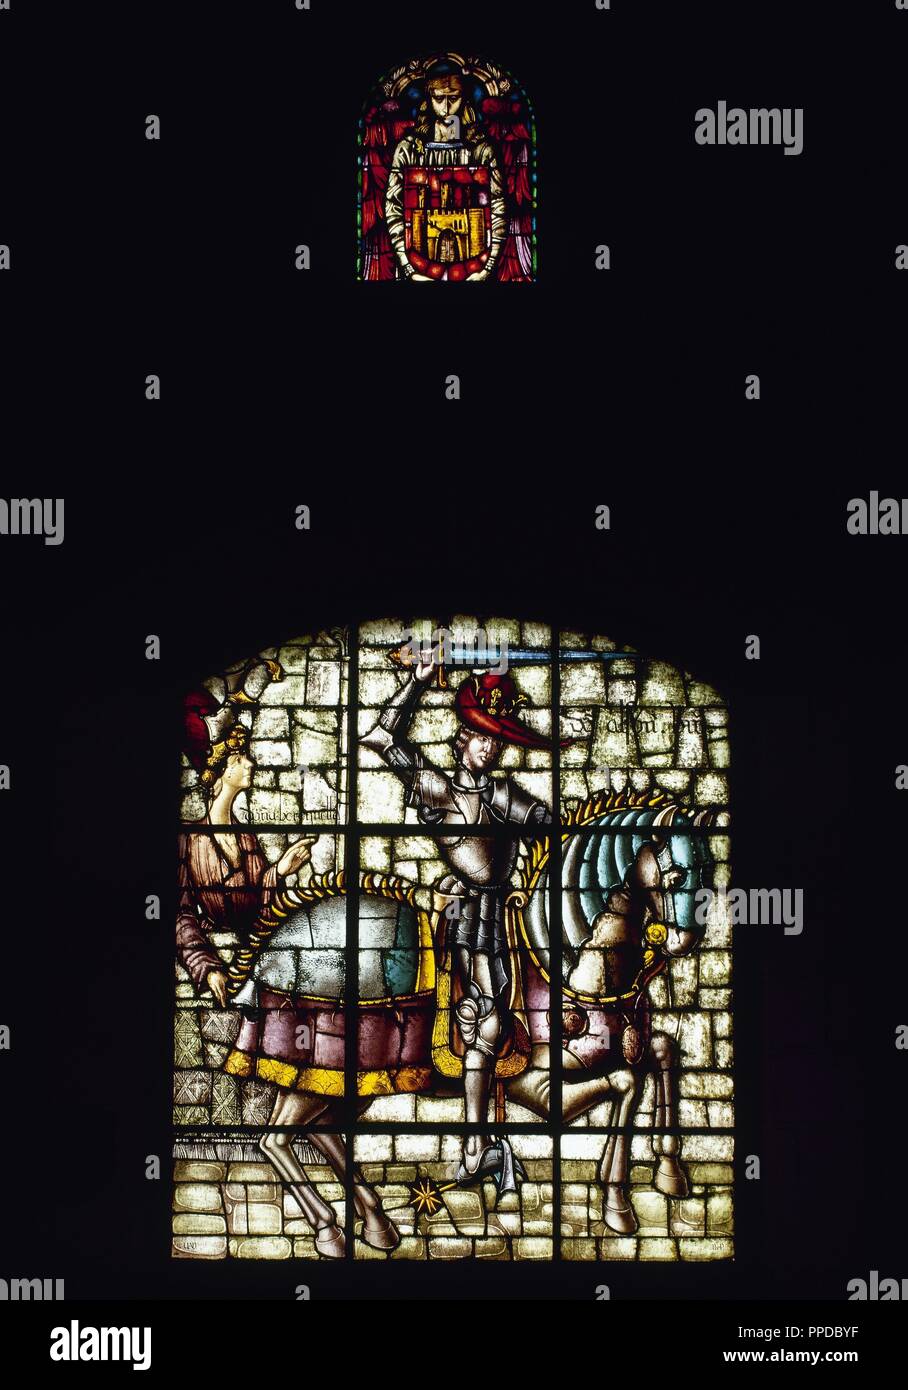 Alfonso VIII. von Kastilien und Toledo (1155-1214) und seine Tochter Berengaria von Kastilien (1179-1180). Glasmalerei. Ananas Zimmer. Alcazar. Segovia. Kastilien und Leon. Spanien. Stockfoto